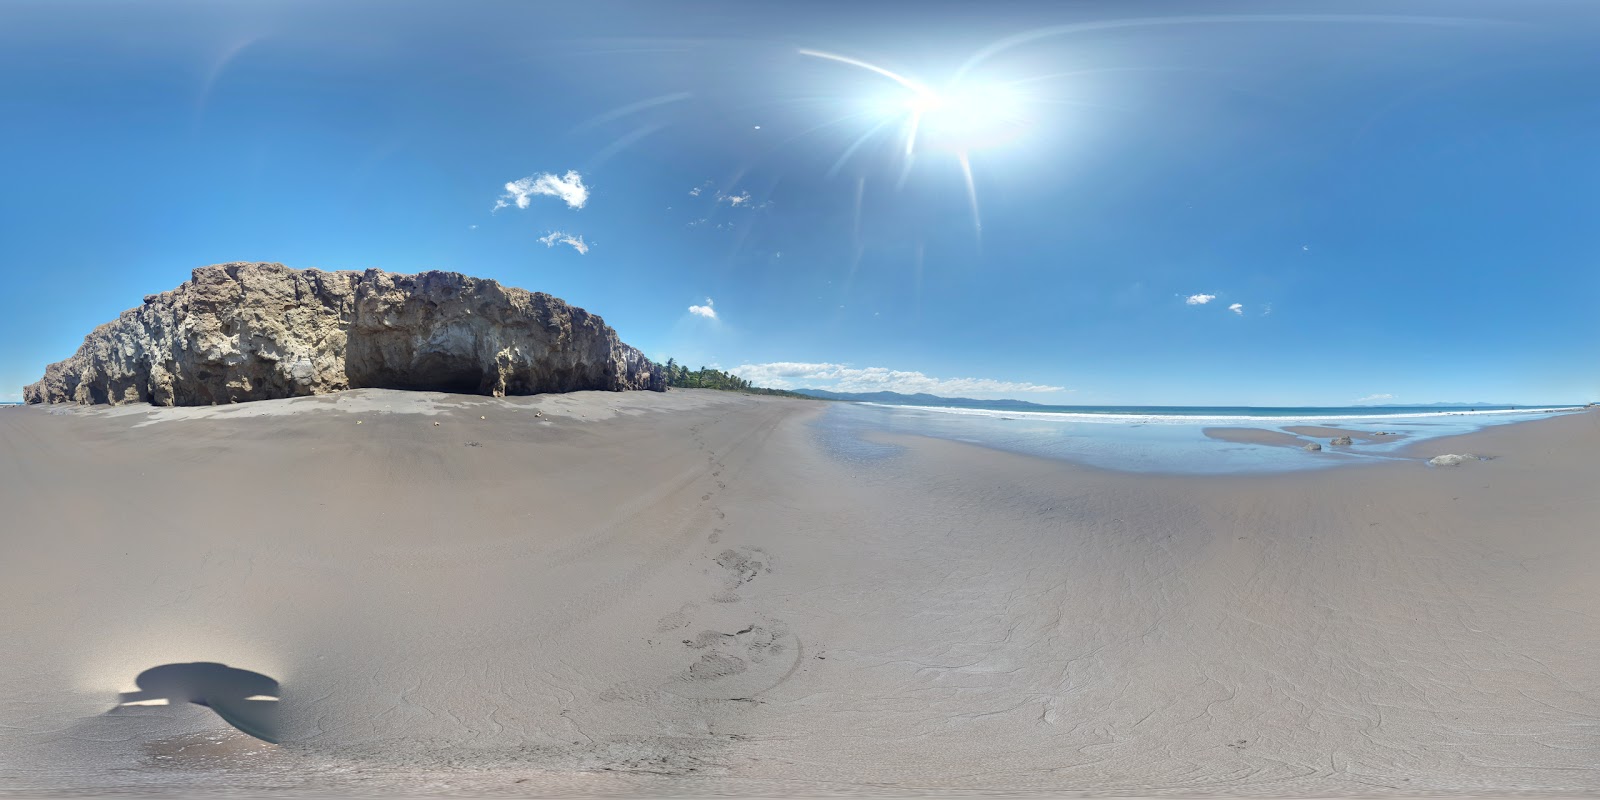 Zdjęcie Playa Guacalillo - popularne miejsce wśród znawców relaksu